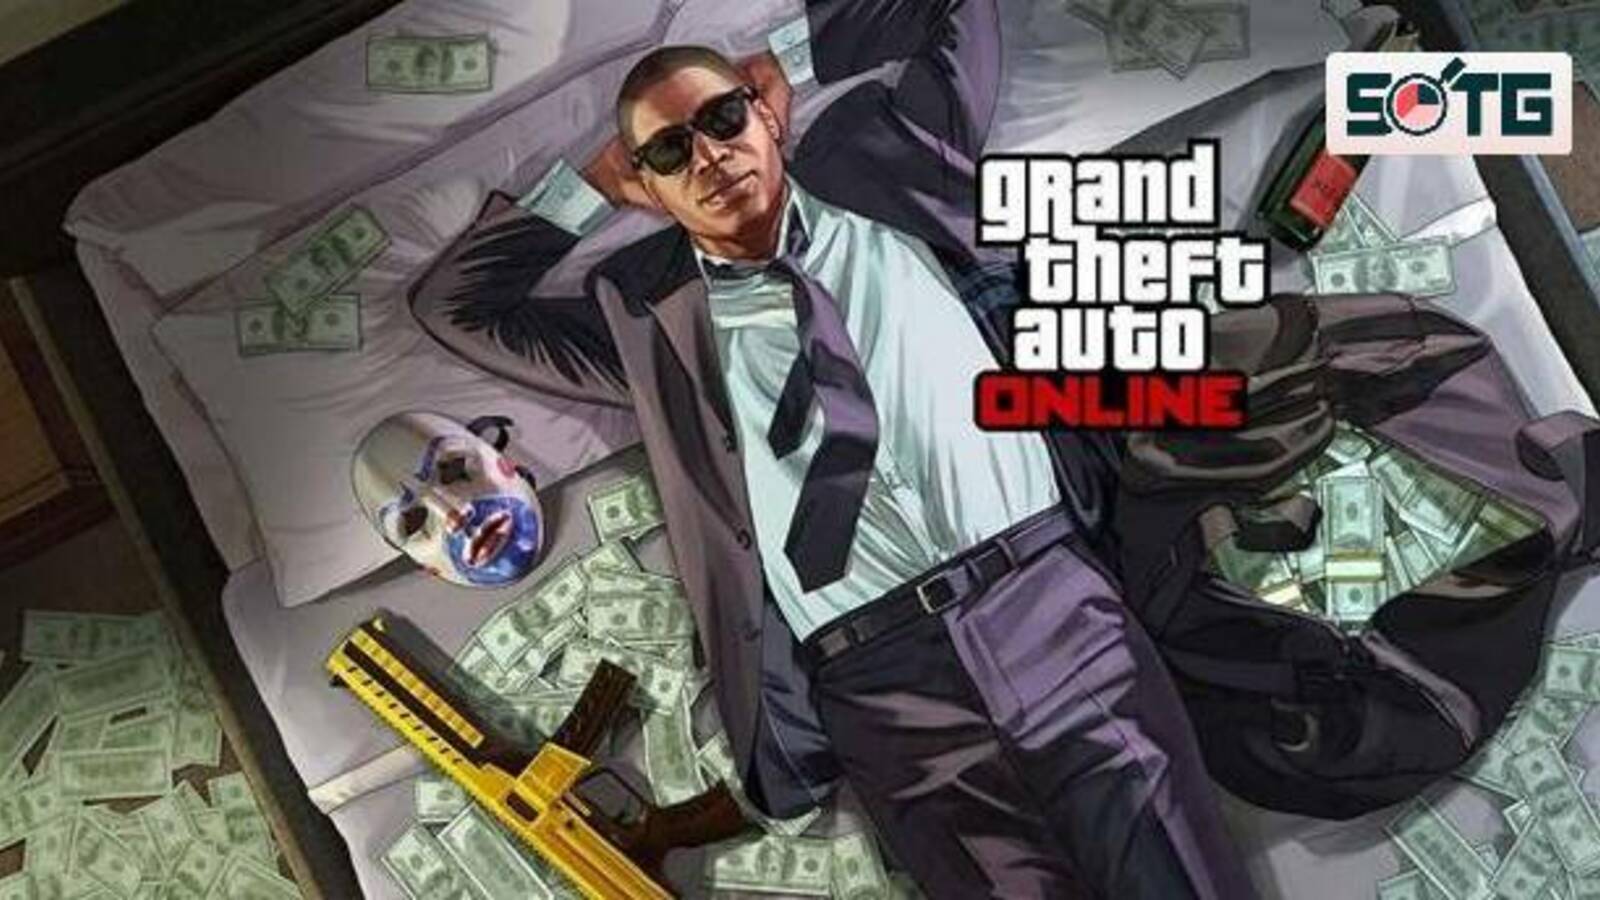 Następna aktualizacja GTA Online będzie dedykowana przedsiębiorstwom przestępczym